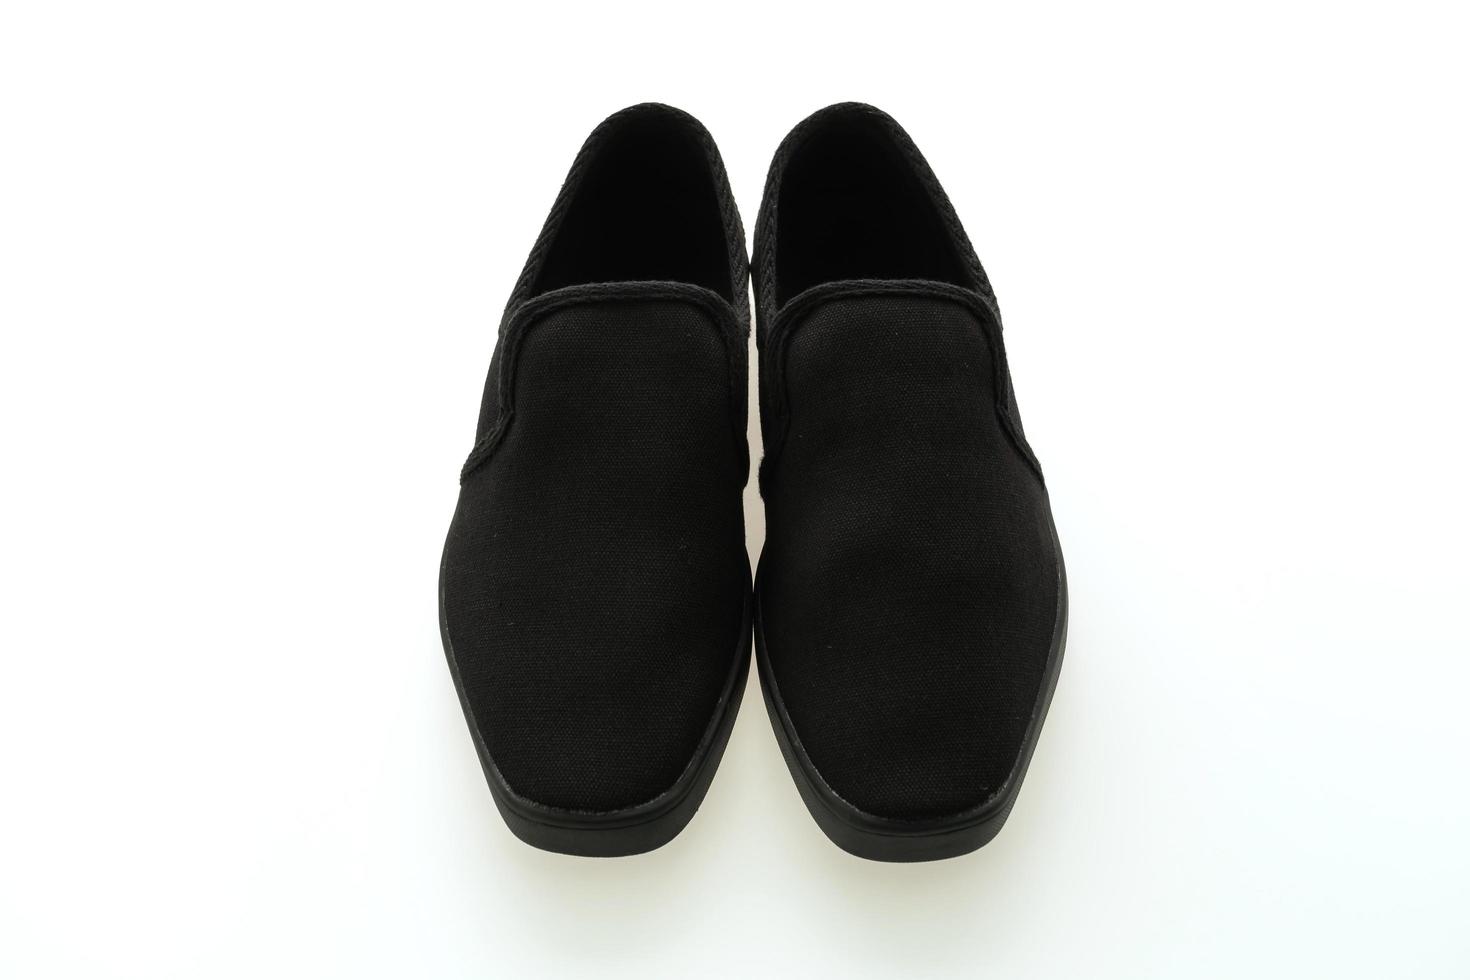 chaussures noires sur fond blanc photo